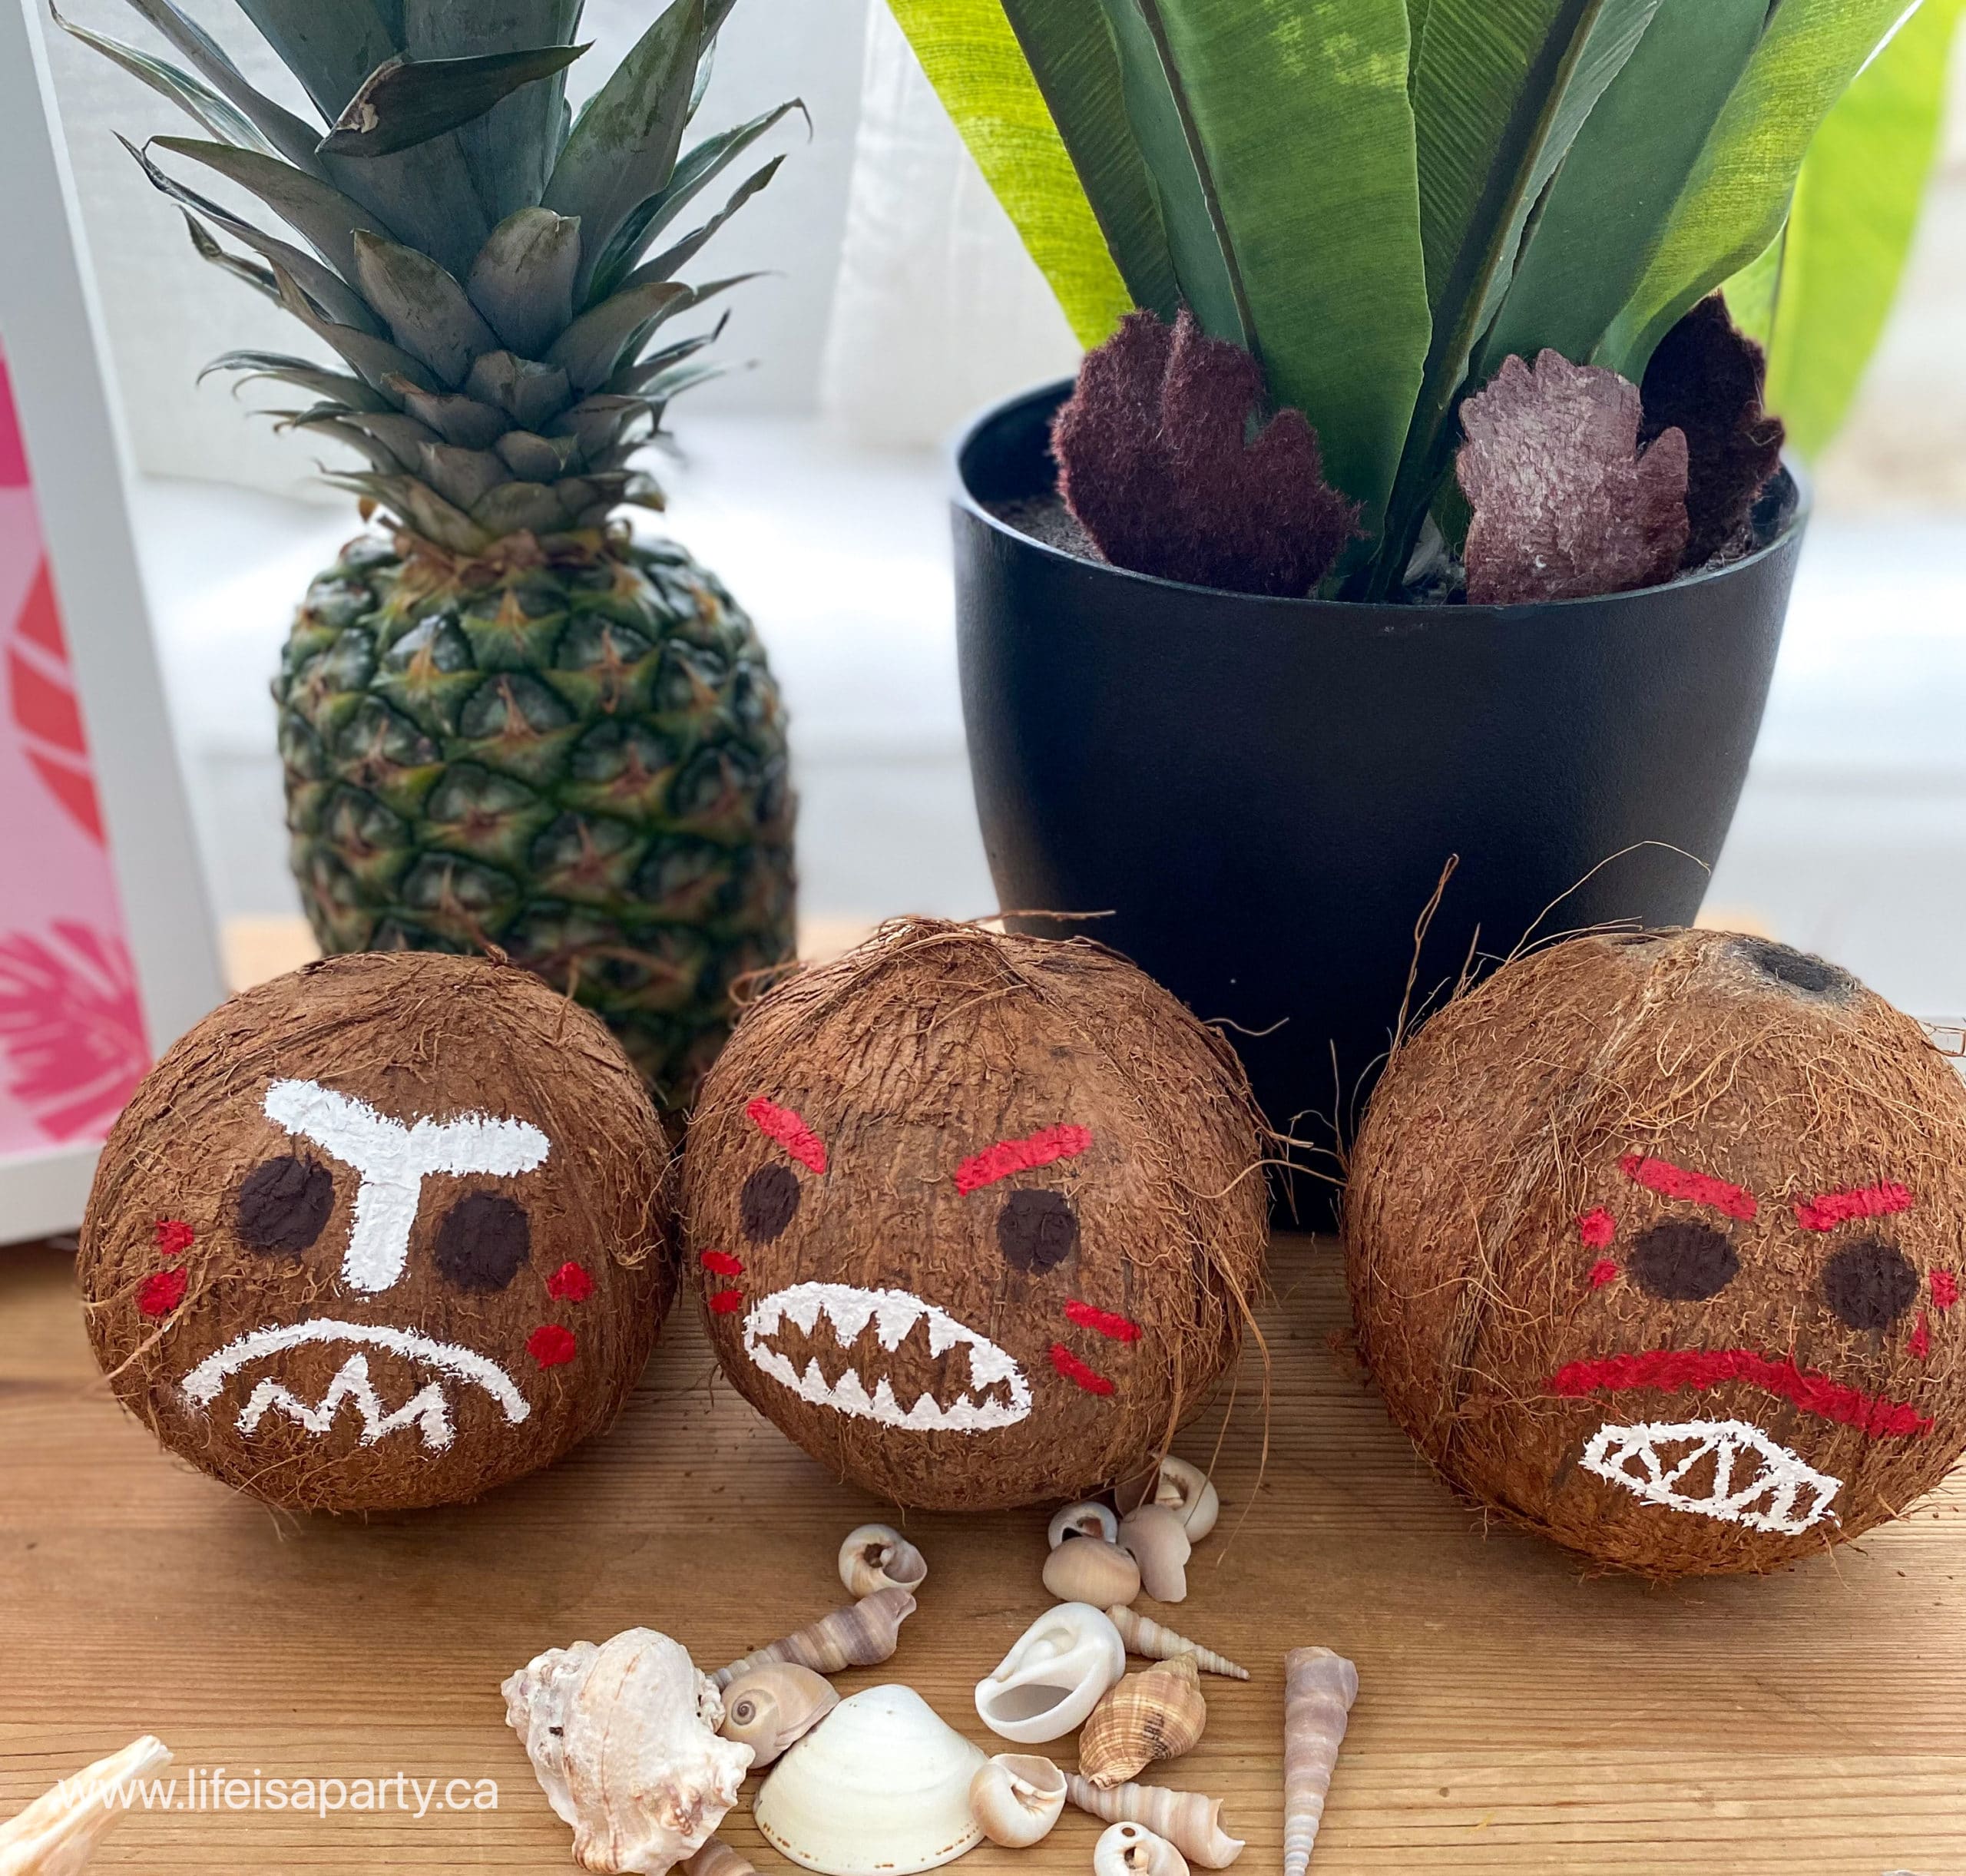 DIY Moana coconut pirates